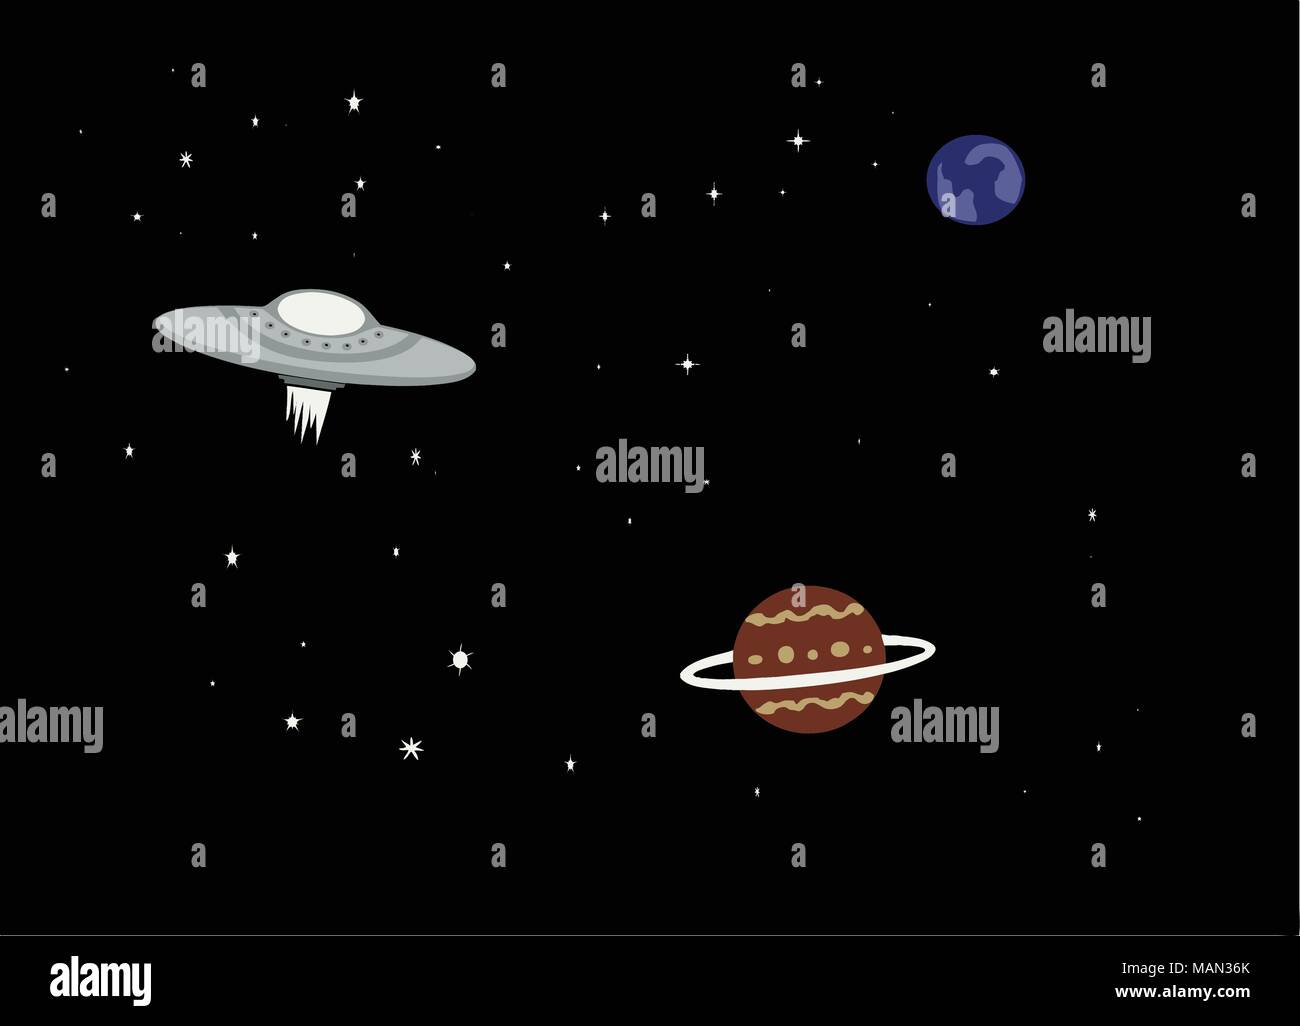 Einfache Abbildung eines UFO Raumschiff im Weltall mit Planeten. Stock Vektor